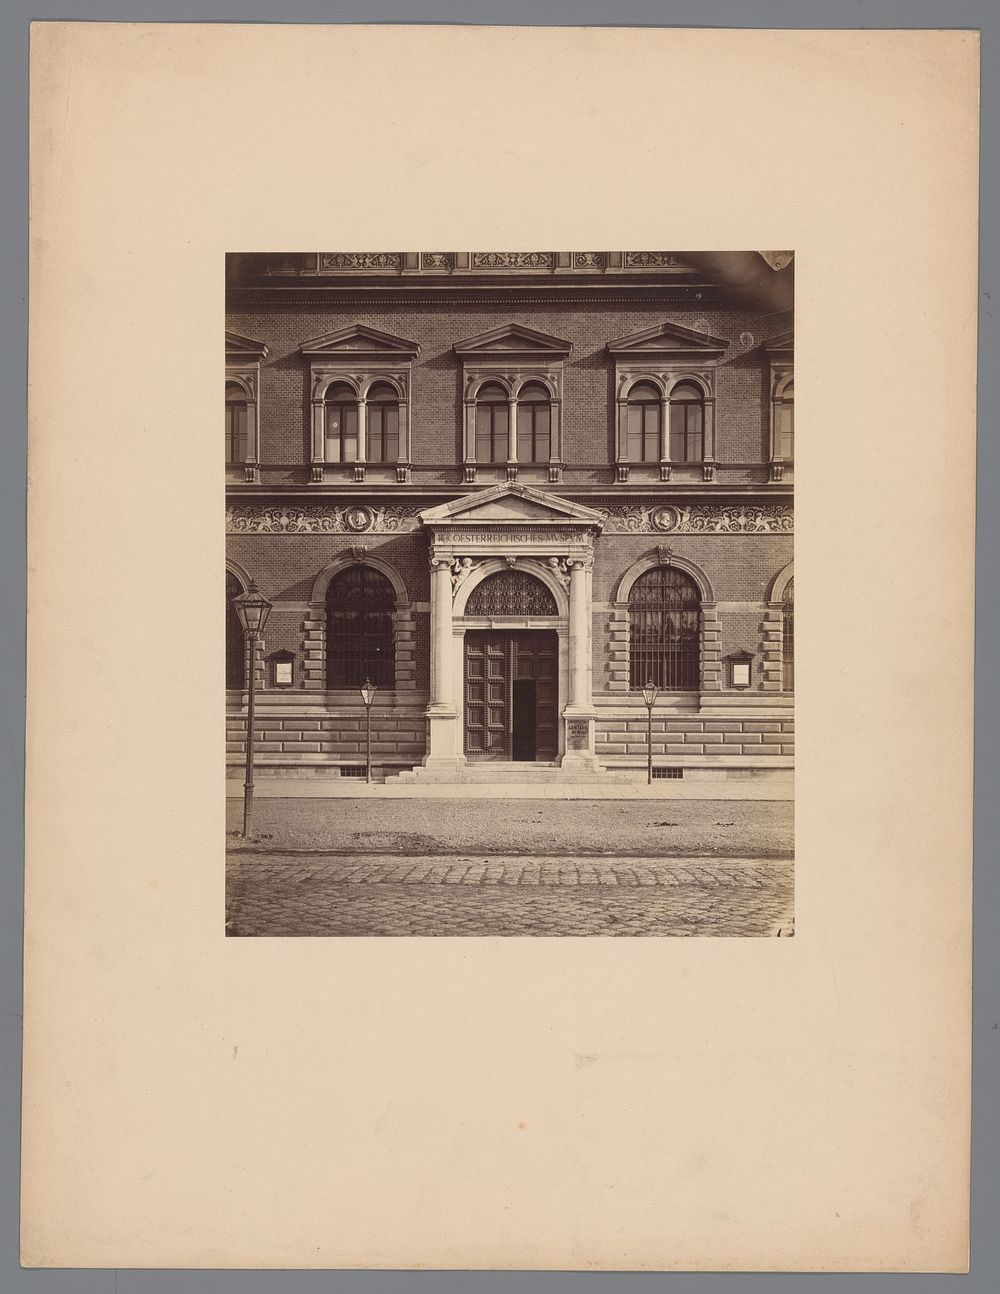 Façade van het Österreichisches Museum für angewandte Kunst te Wenen (c. 1875 - c. 1900) by anonymous and Ludwig Niernberger